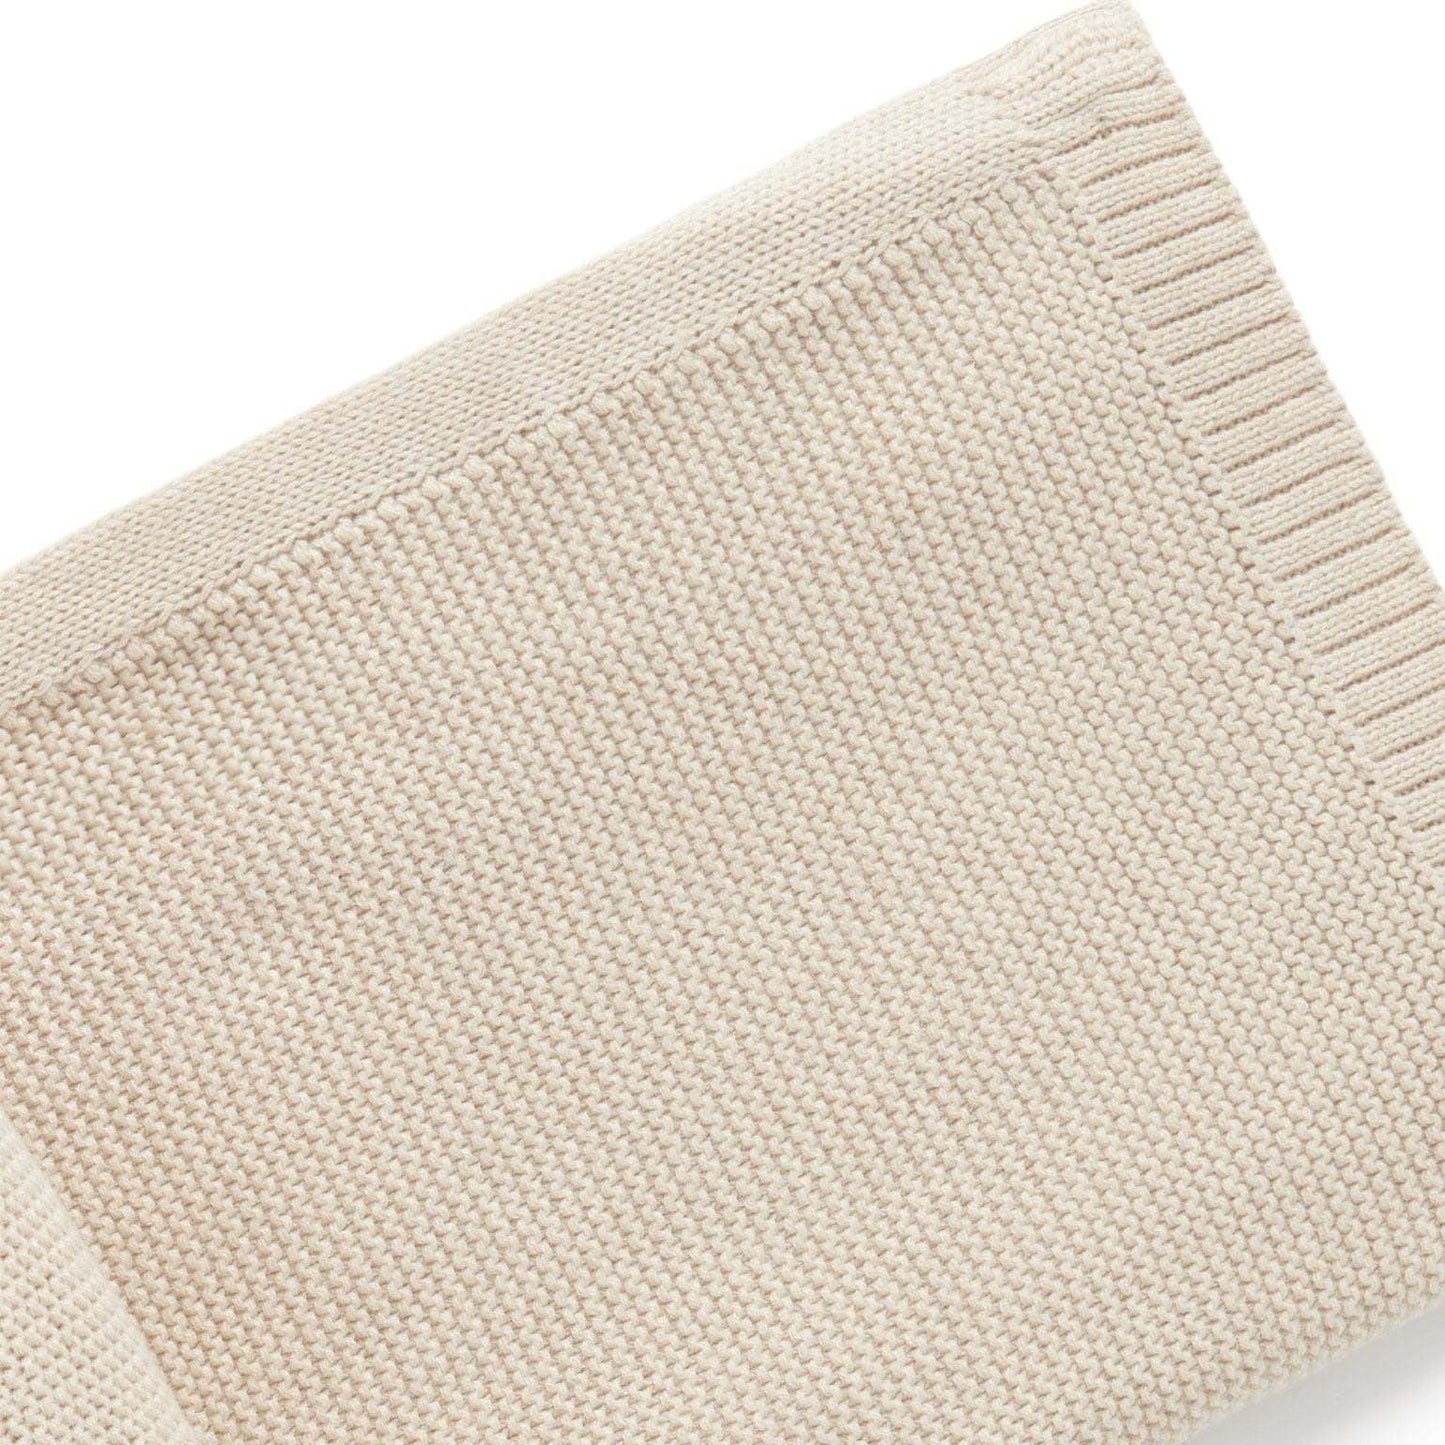 PURE BABY - Essentials Textured Blanket